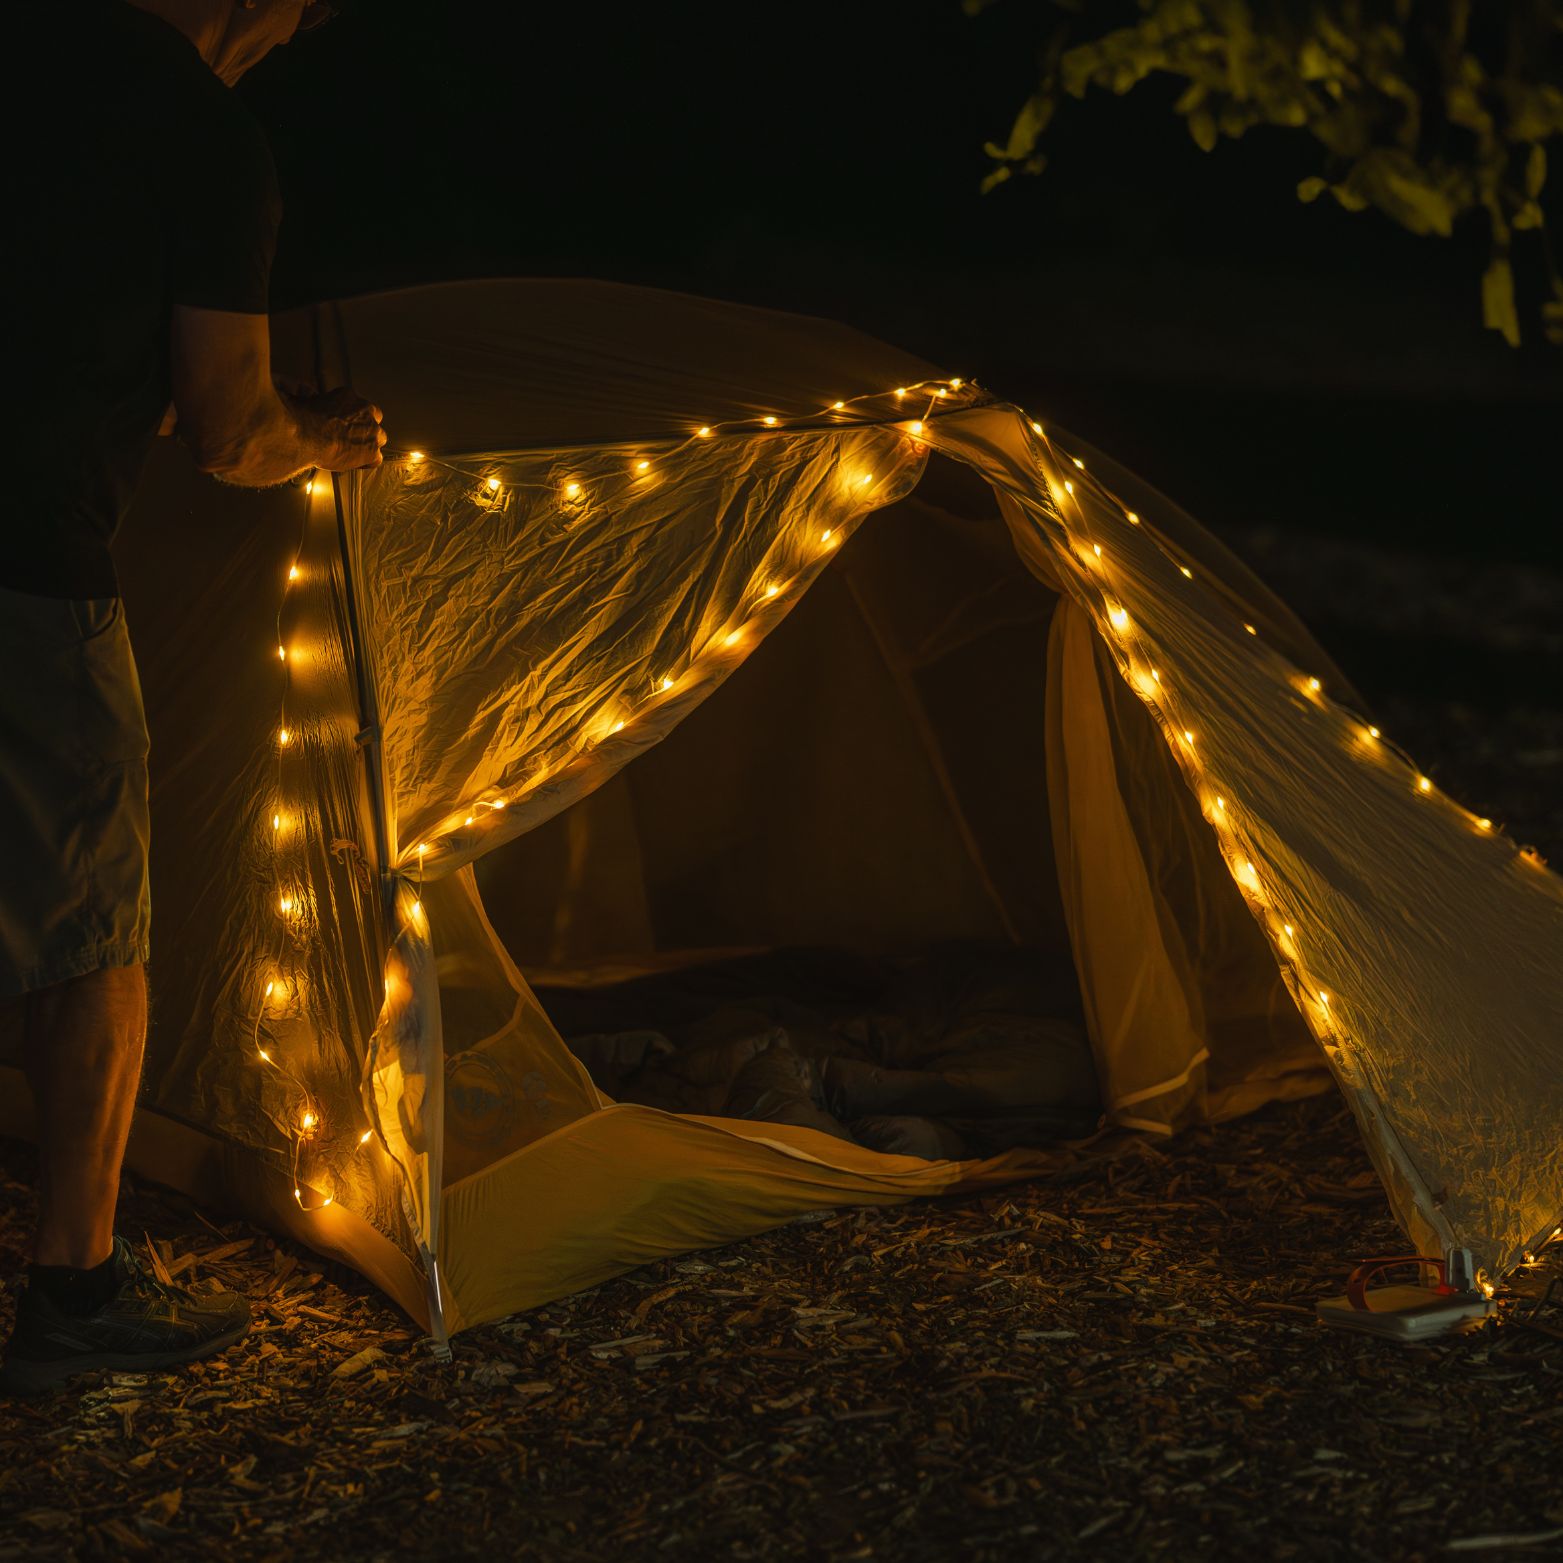 Solar string light outside a tent